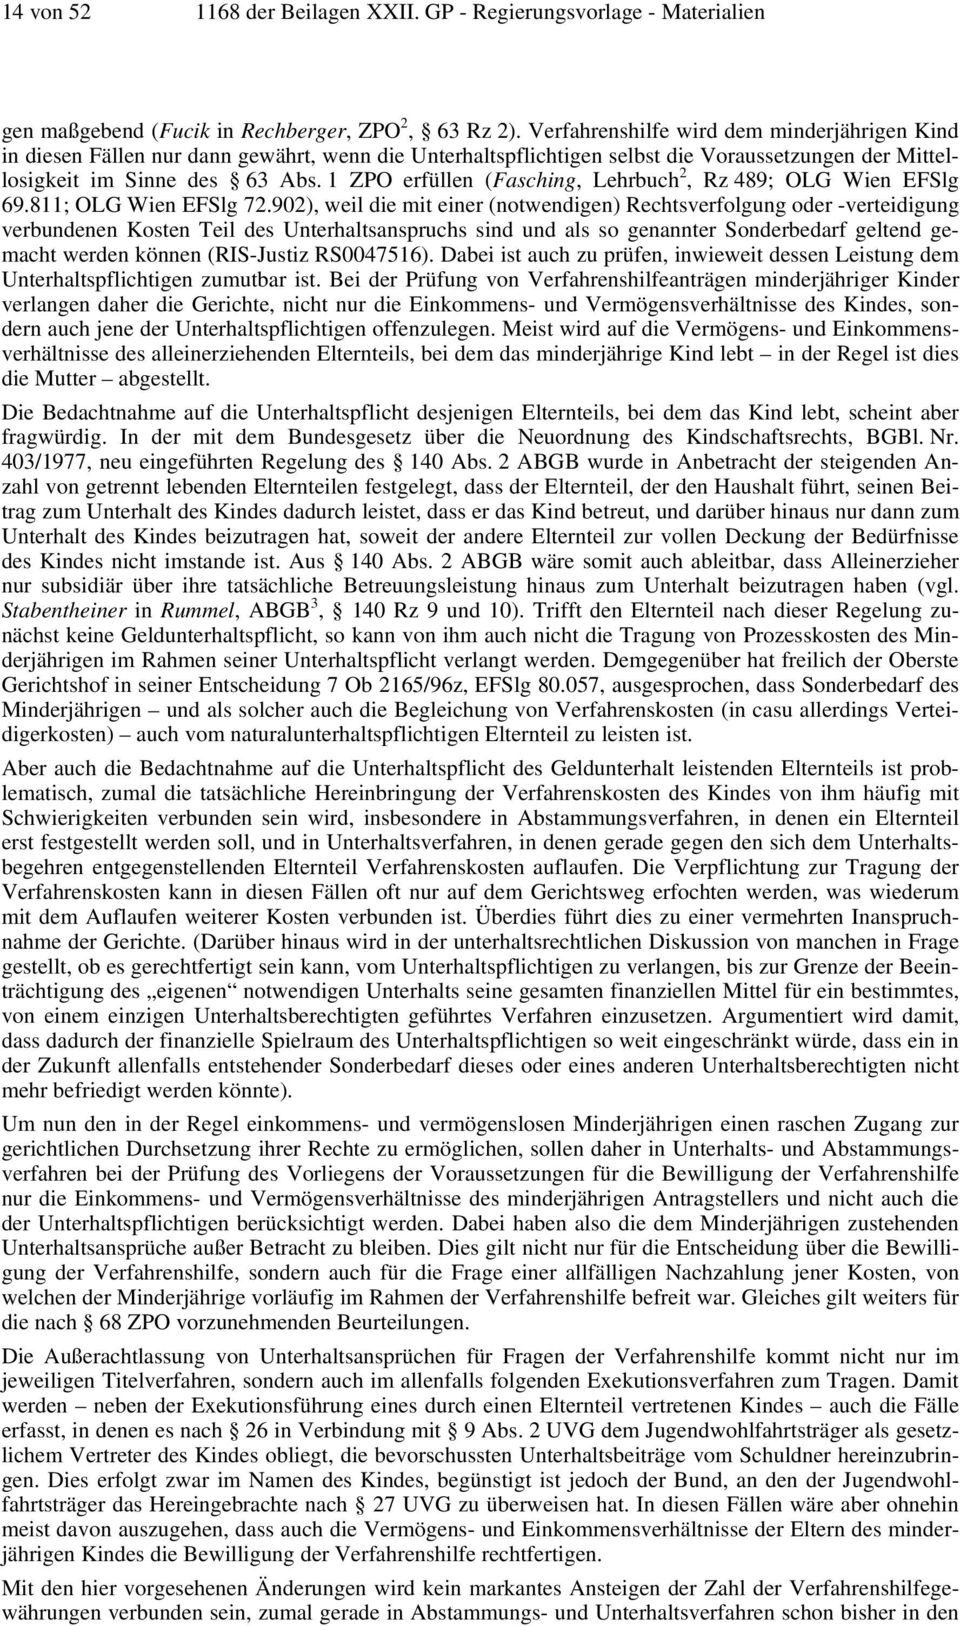 1 ZPO erfüllen (Fasching, Lehrbuch 2, Rz 489; OLG Wien EFSlg 69.811; OLG Wien EFSlg 72.